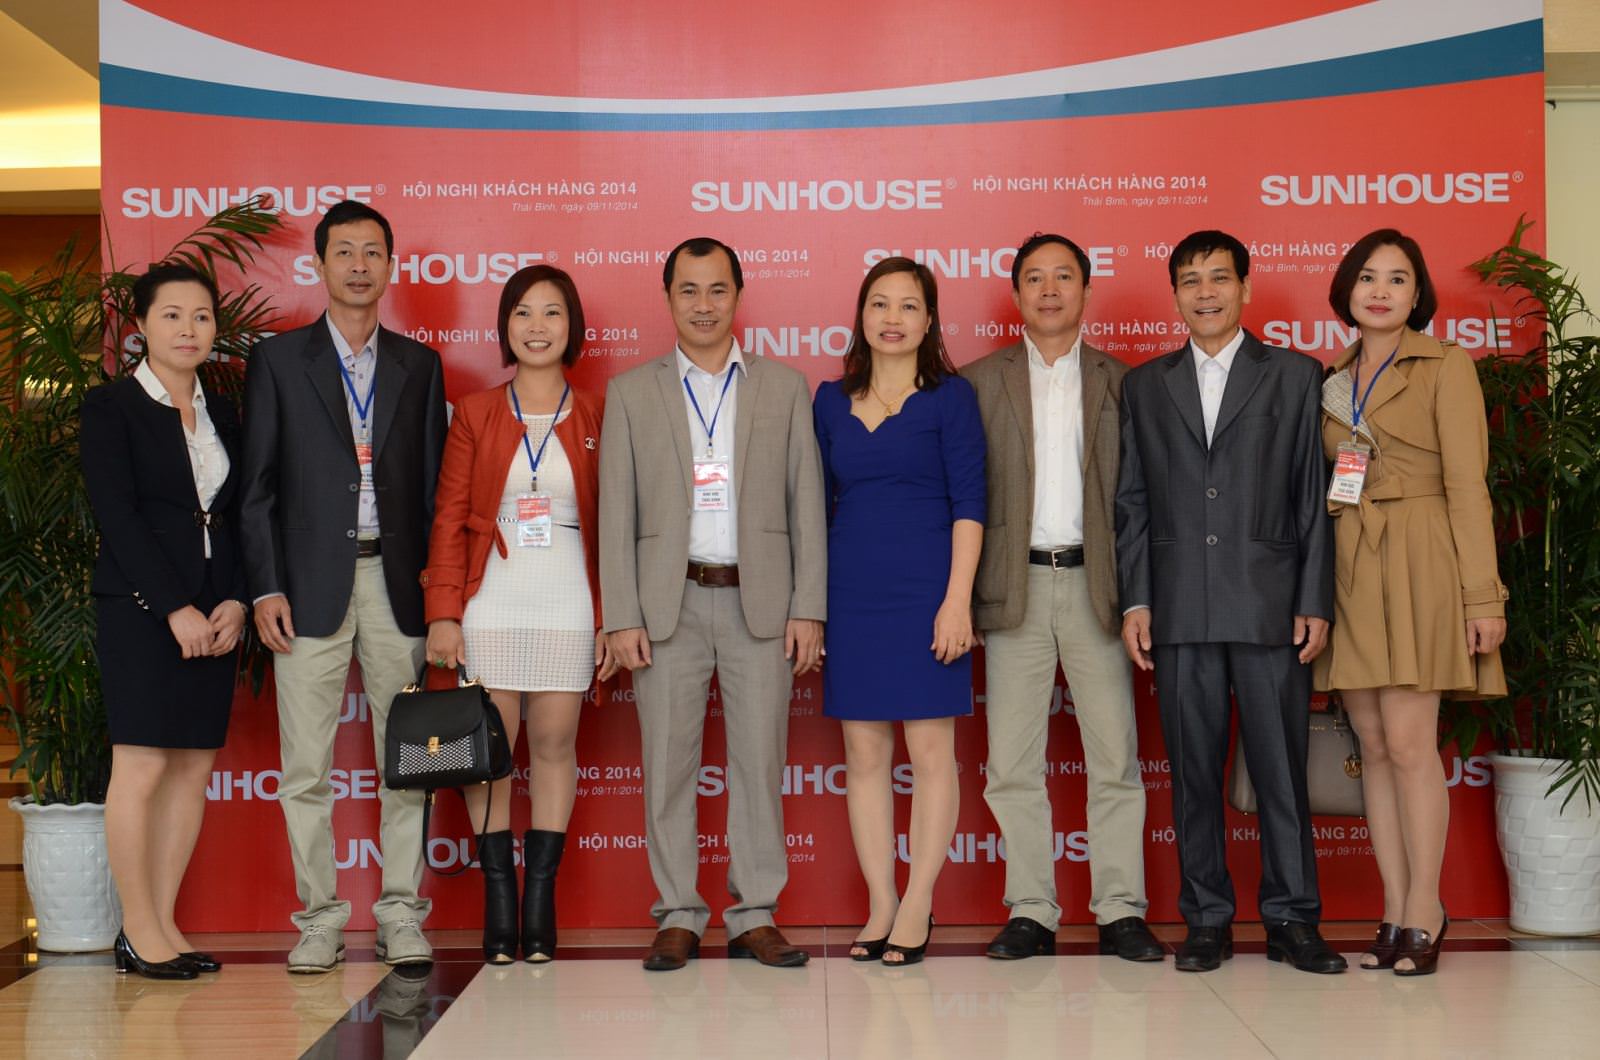 Hội nghị khách hàng Sunhouse Thái Bình 2014 - Đồng hành cùng phát triển 5